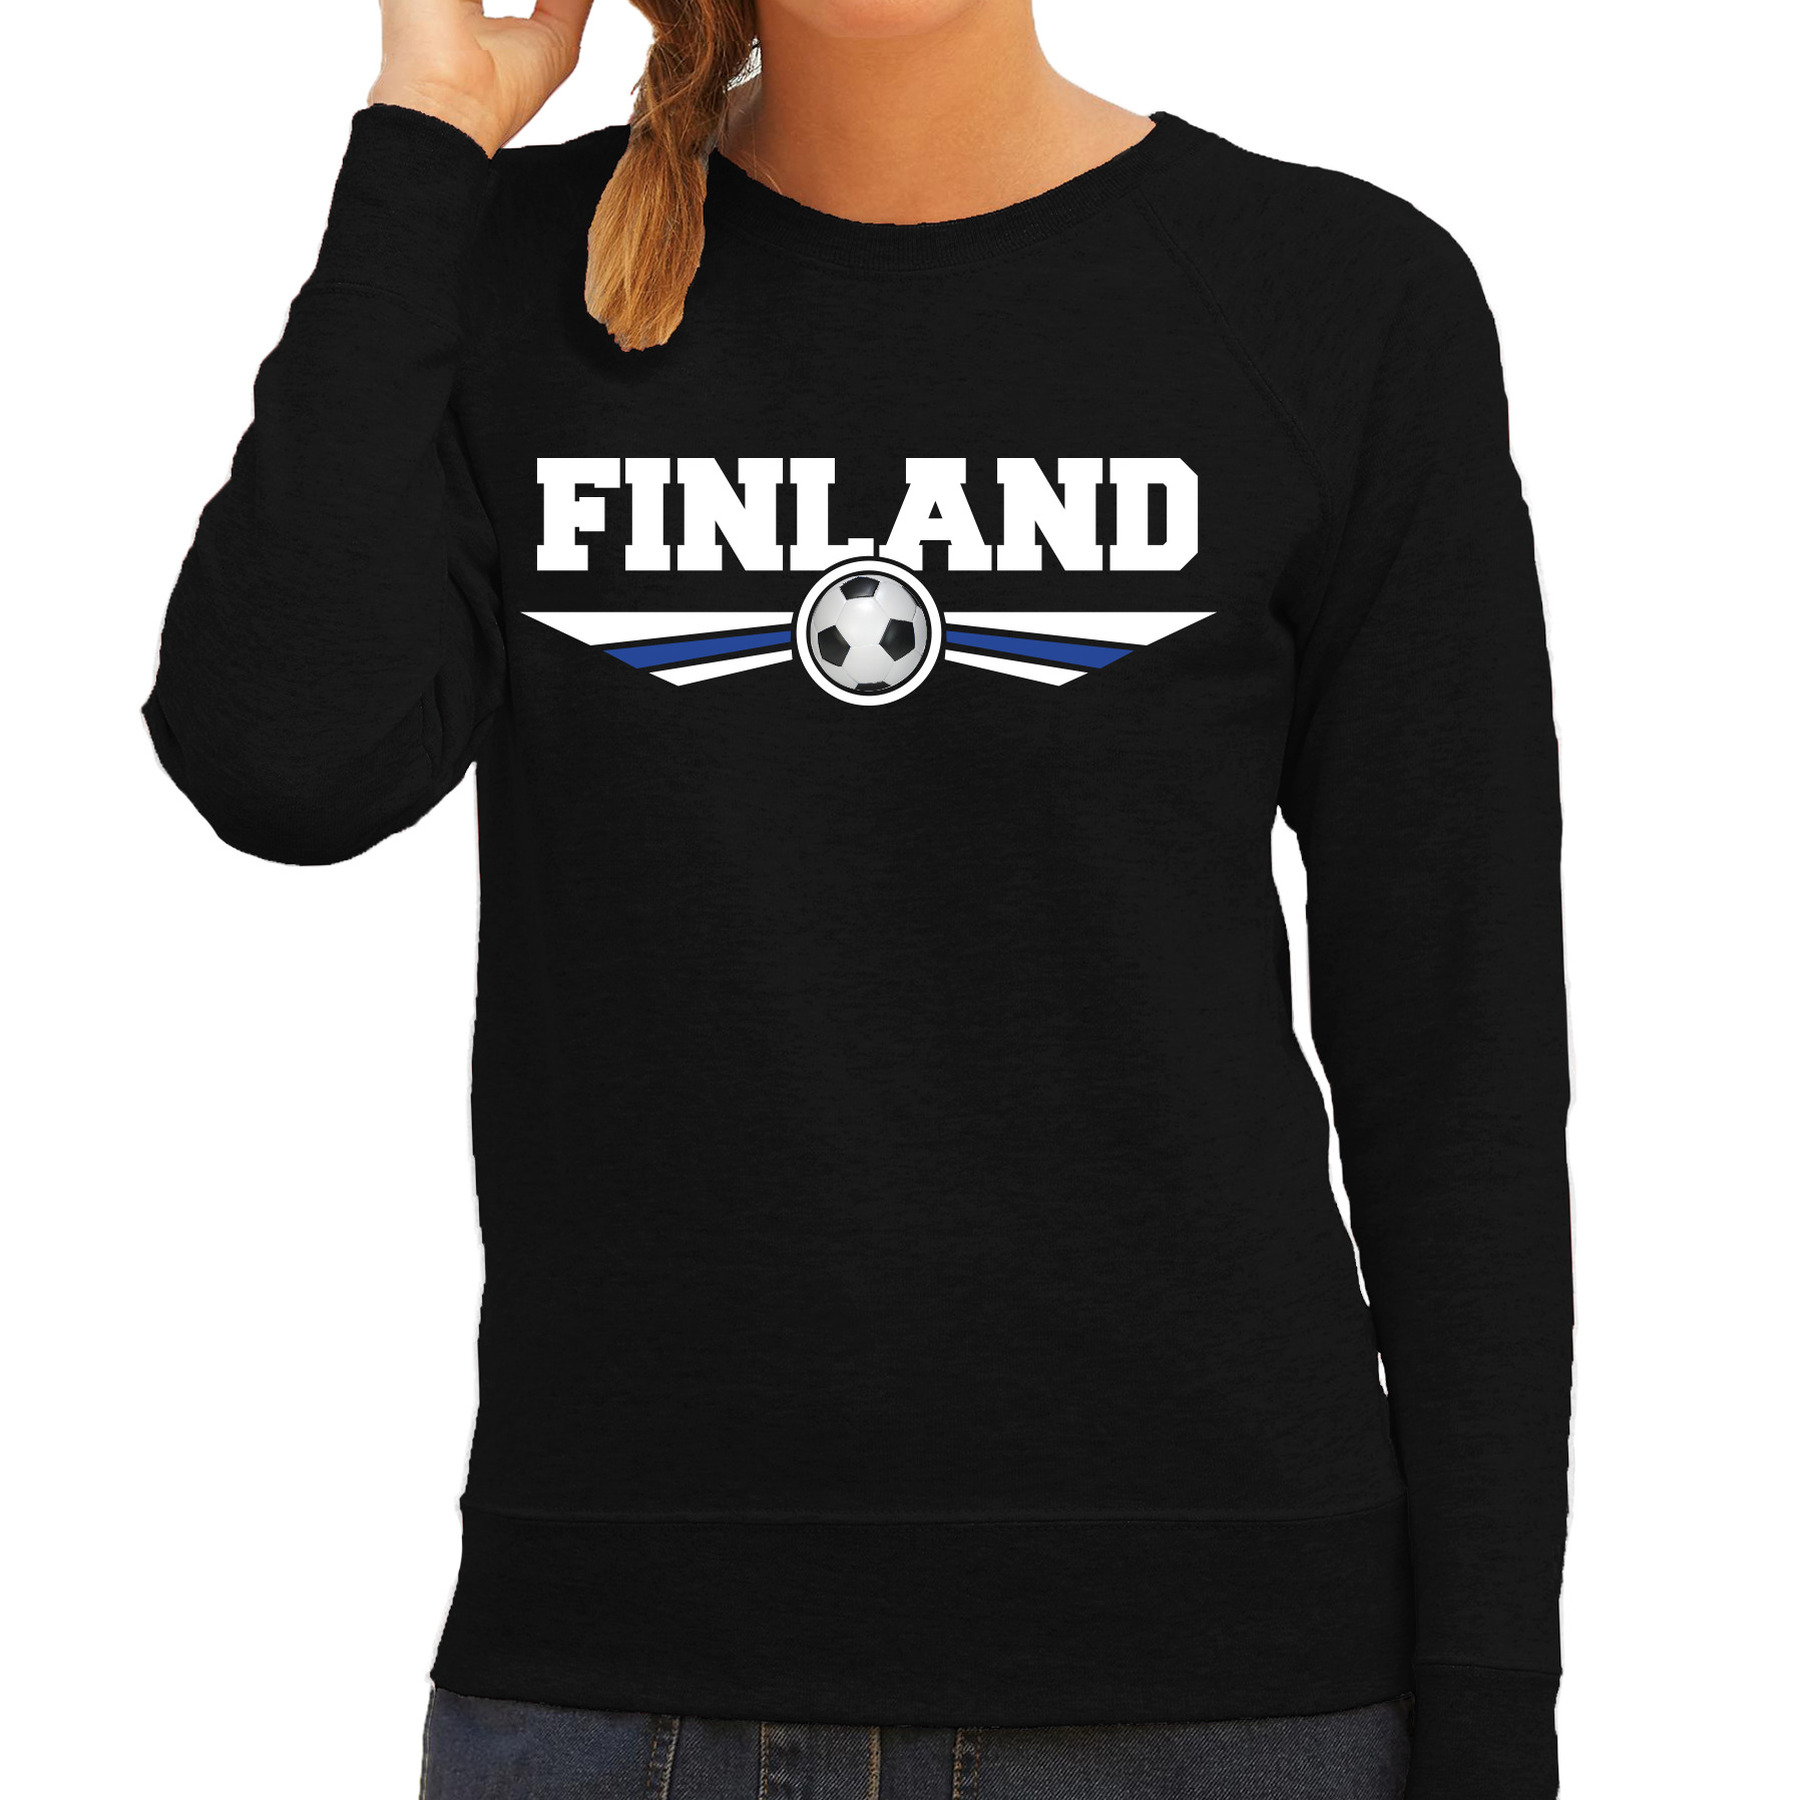 Finland landen - voetbal sweater zwart dames